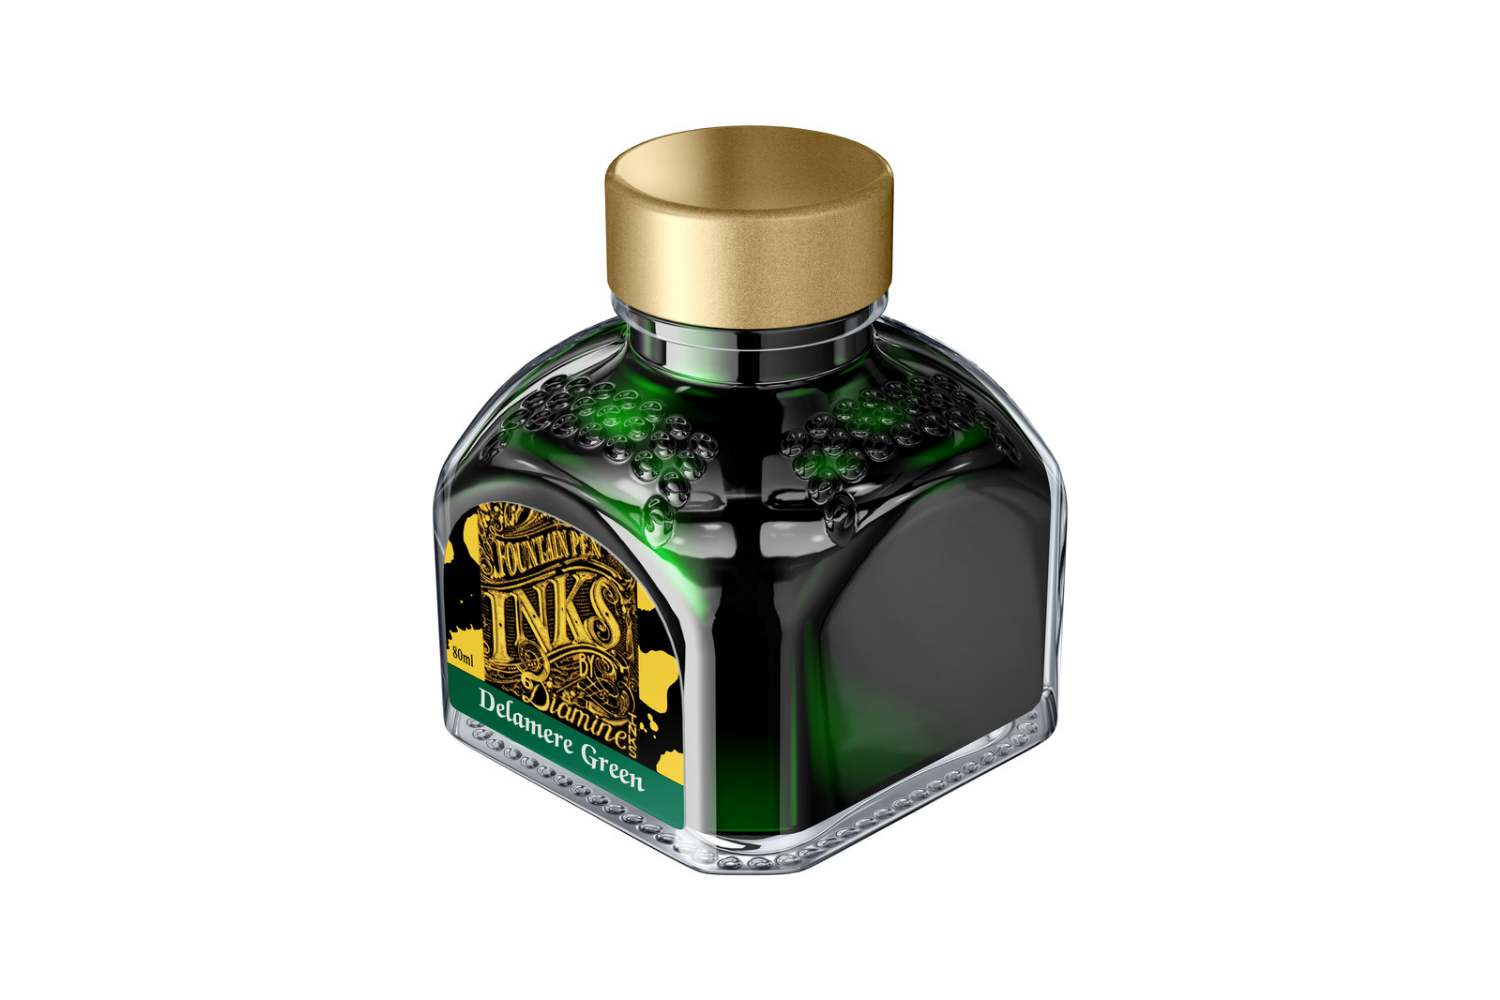 Diamine Delamere Green - Bottled Ink 80 ml